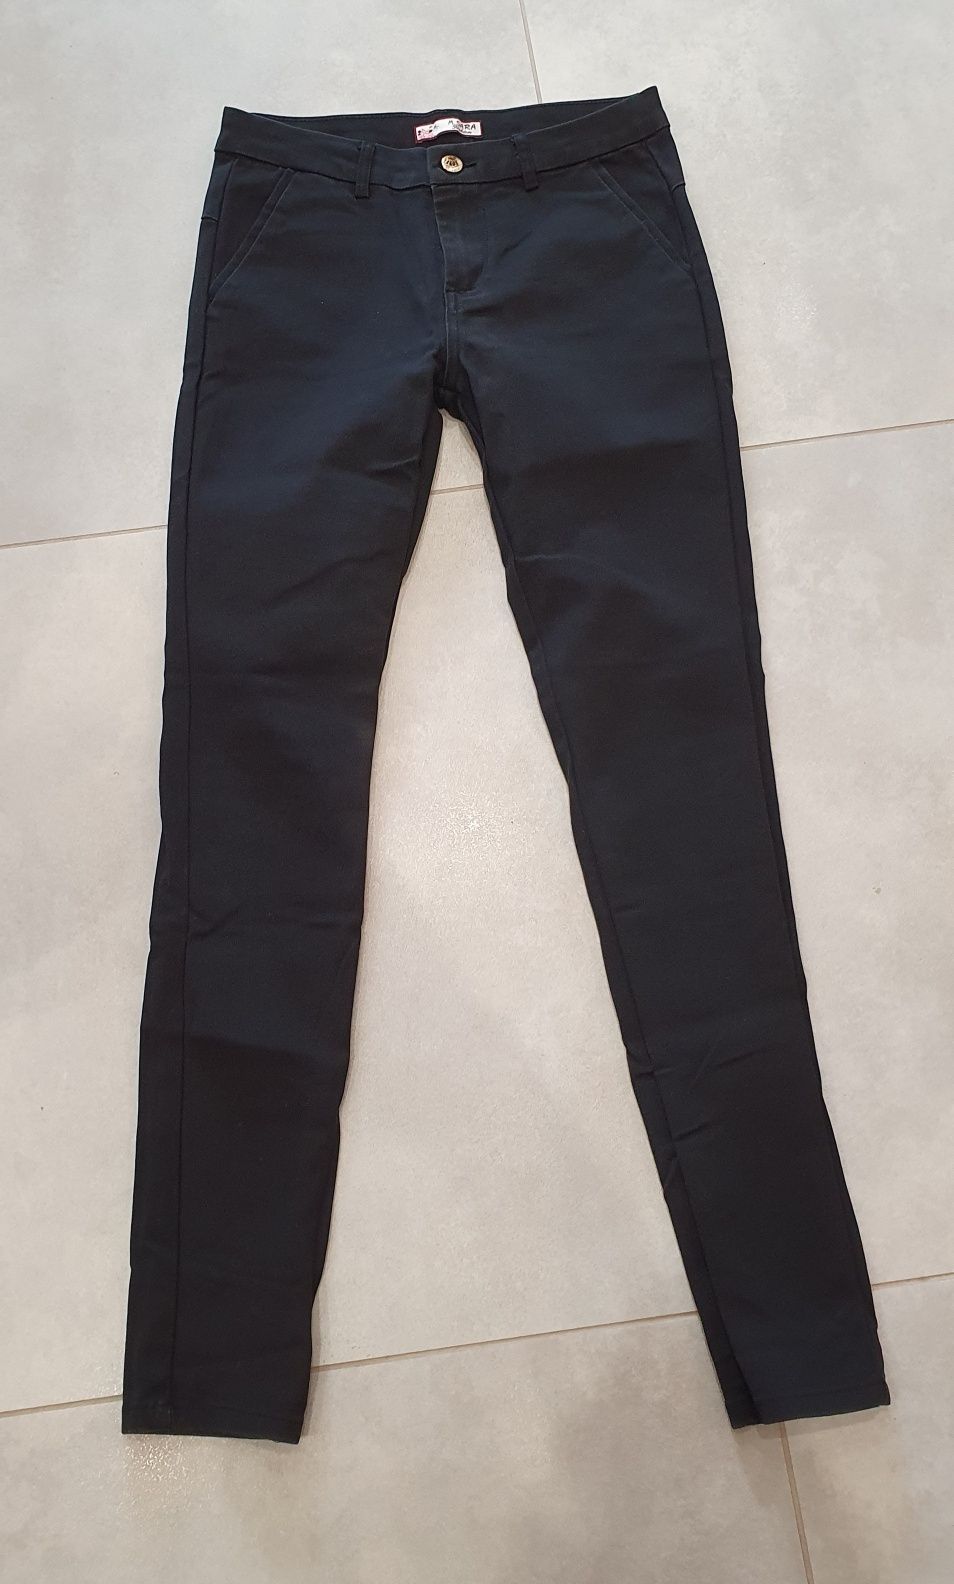 Spodnie czarne rurki 27 34 XS